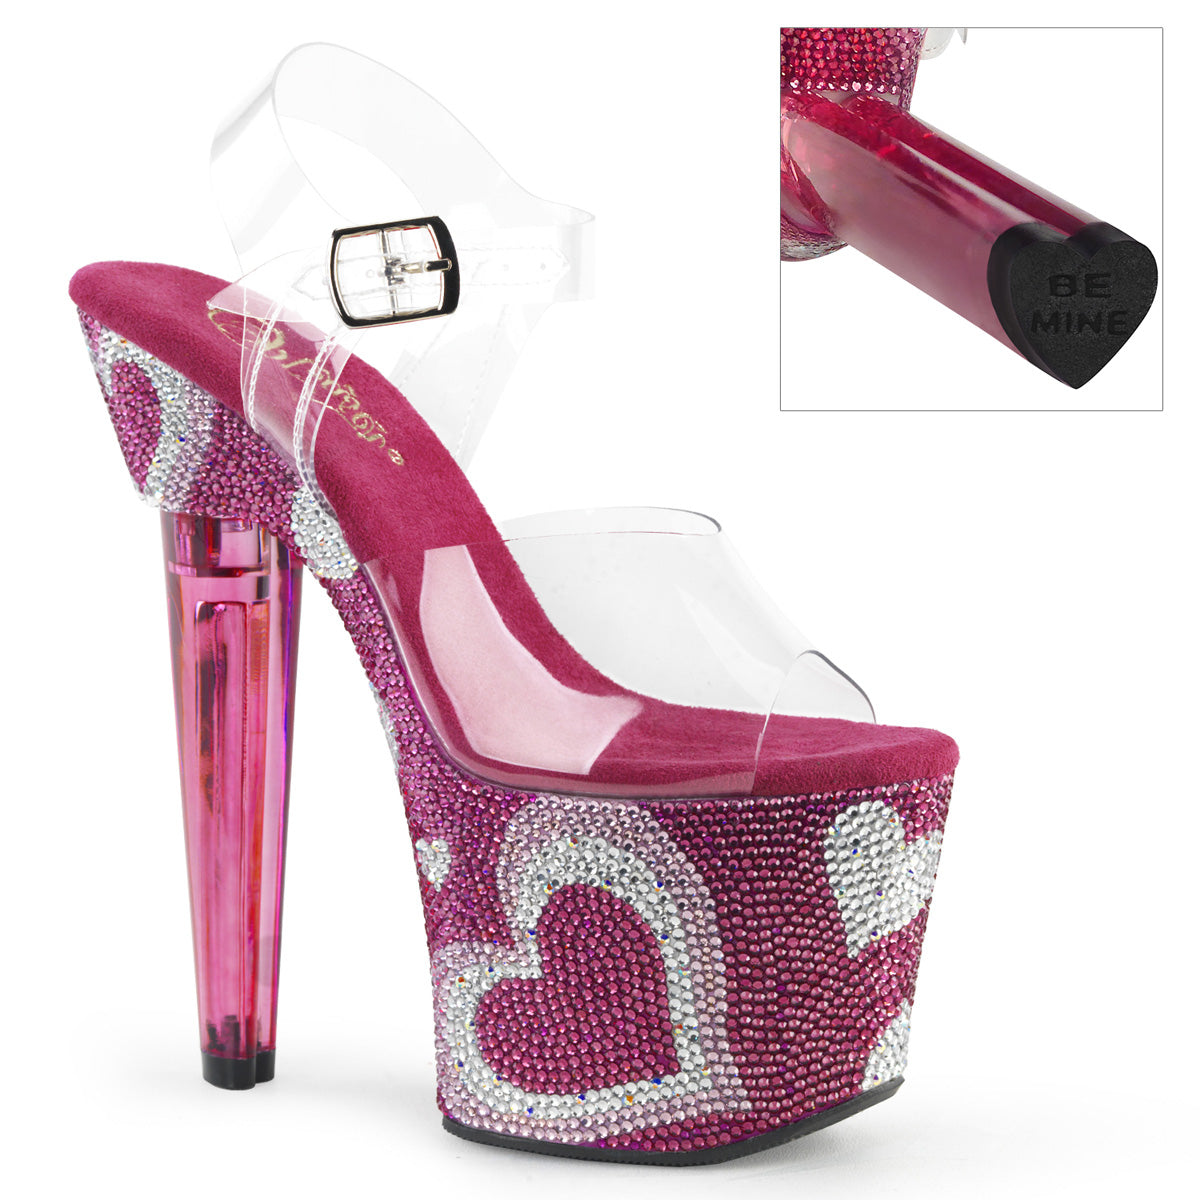 LOVESICK-708HEART 7" Heel ClearHot Pink Stripper Shoes